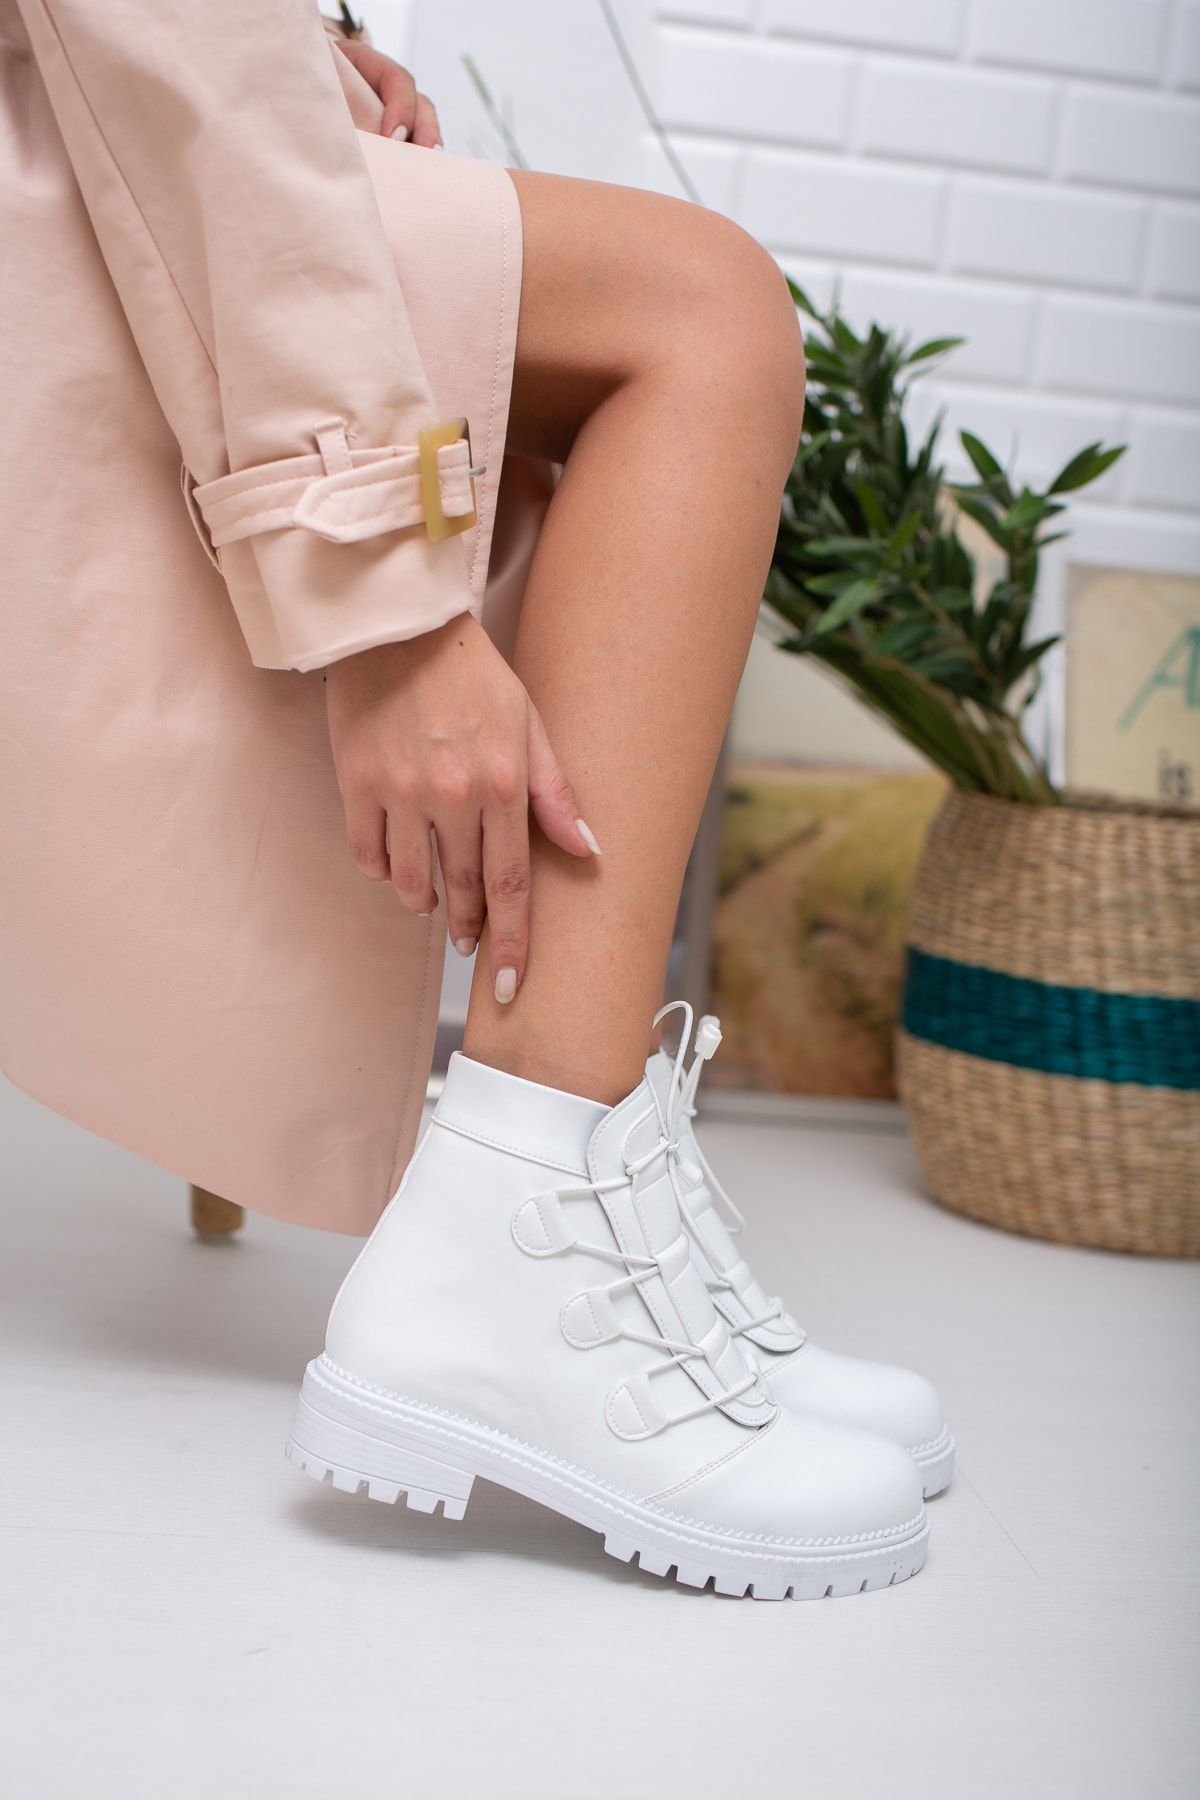 meyra'nın ayakkabıları Beyaz Ciltt Lastik Bağlı Bot